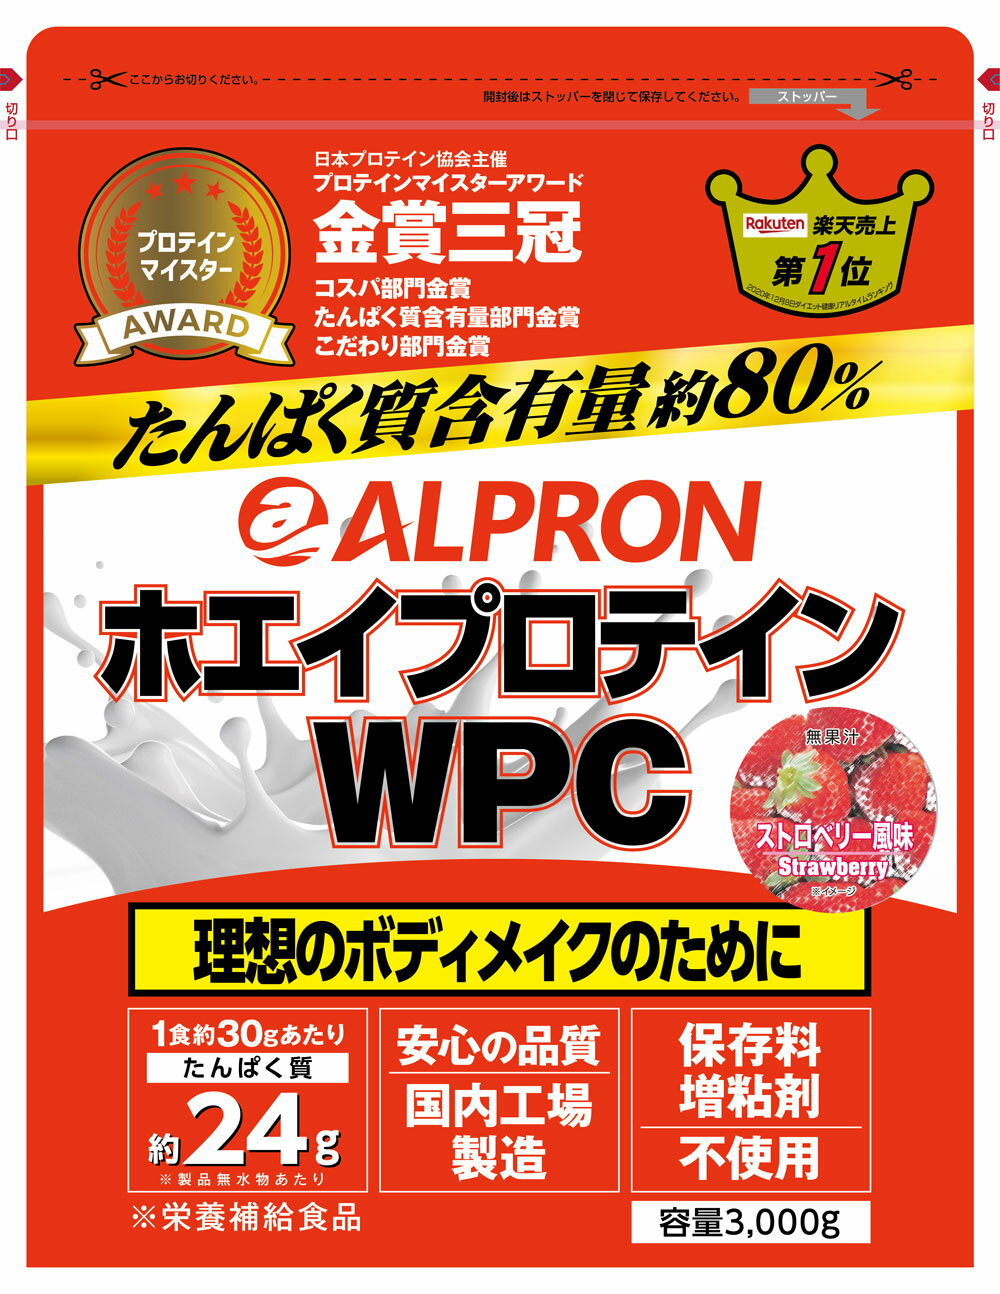 【新リニューアル】アルプロン -ALPRON- ホエイプロテイン WPC ストロベリー ( 3kg )【アミノ酸スコア100】